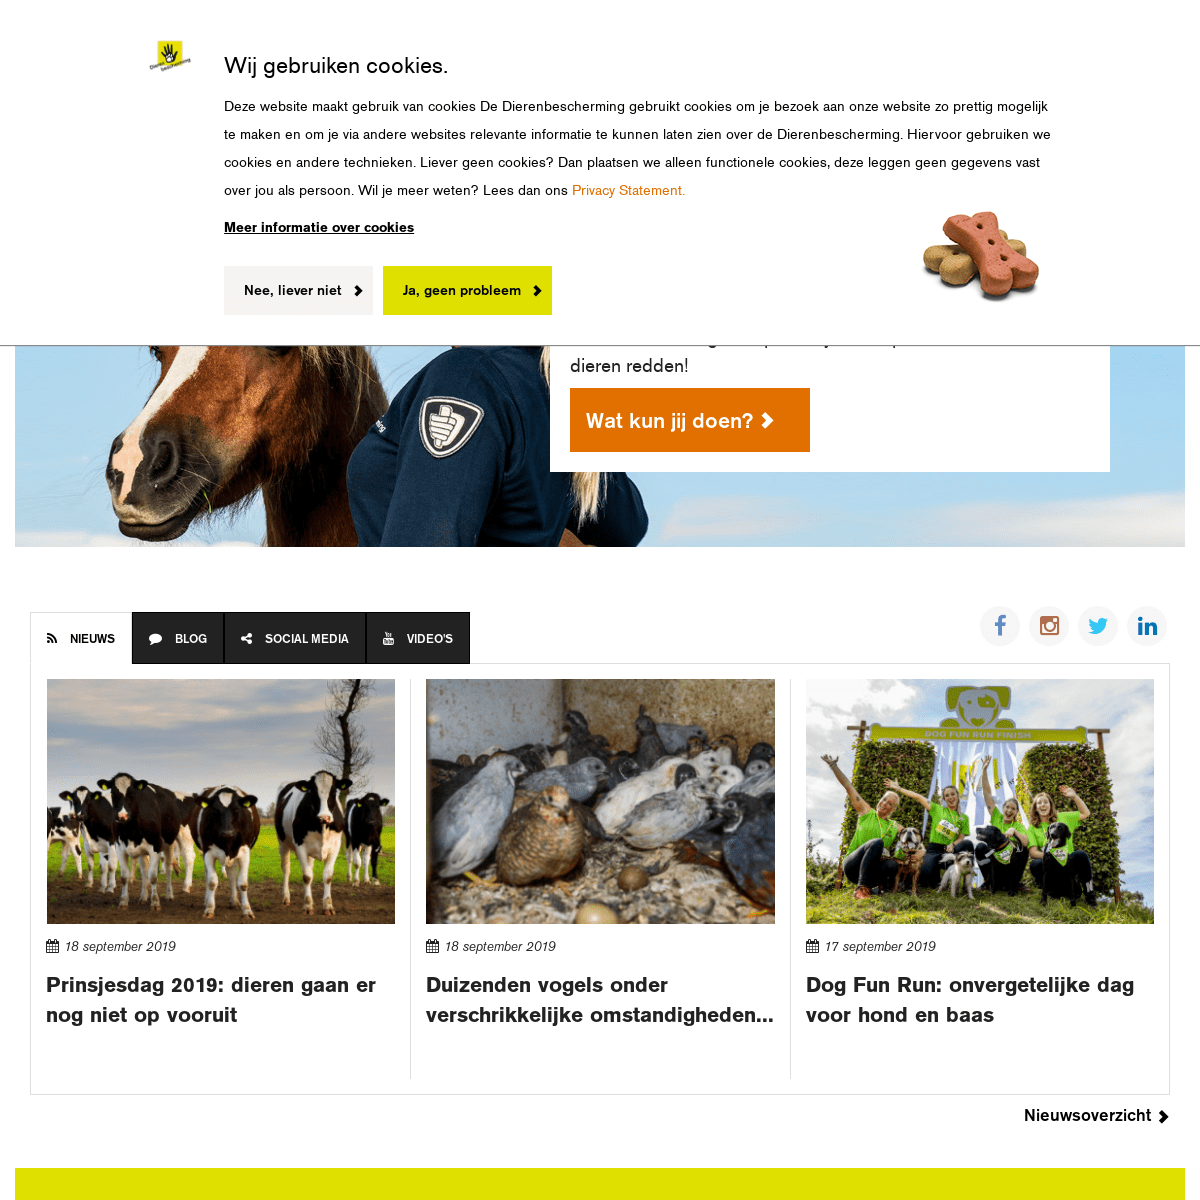 De Dierenbescherming beschermt dieren - Dierenbescherming.nl